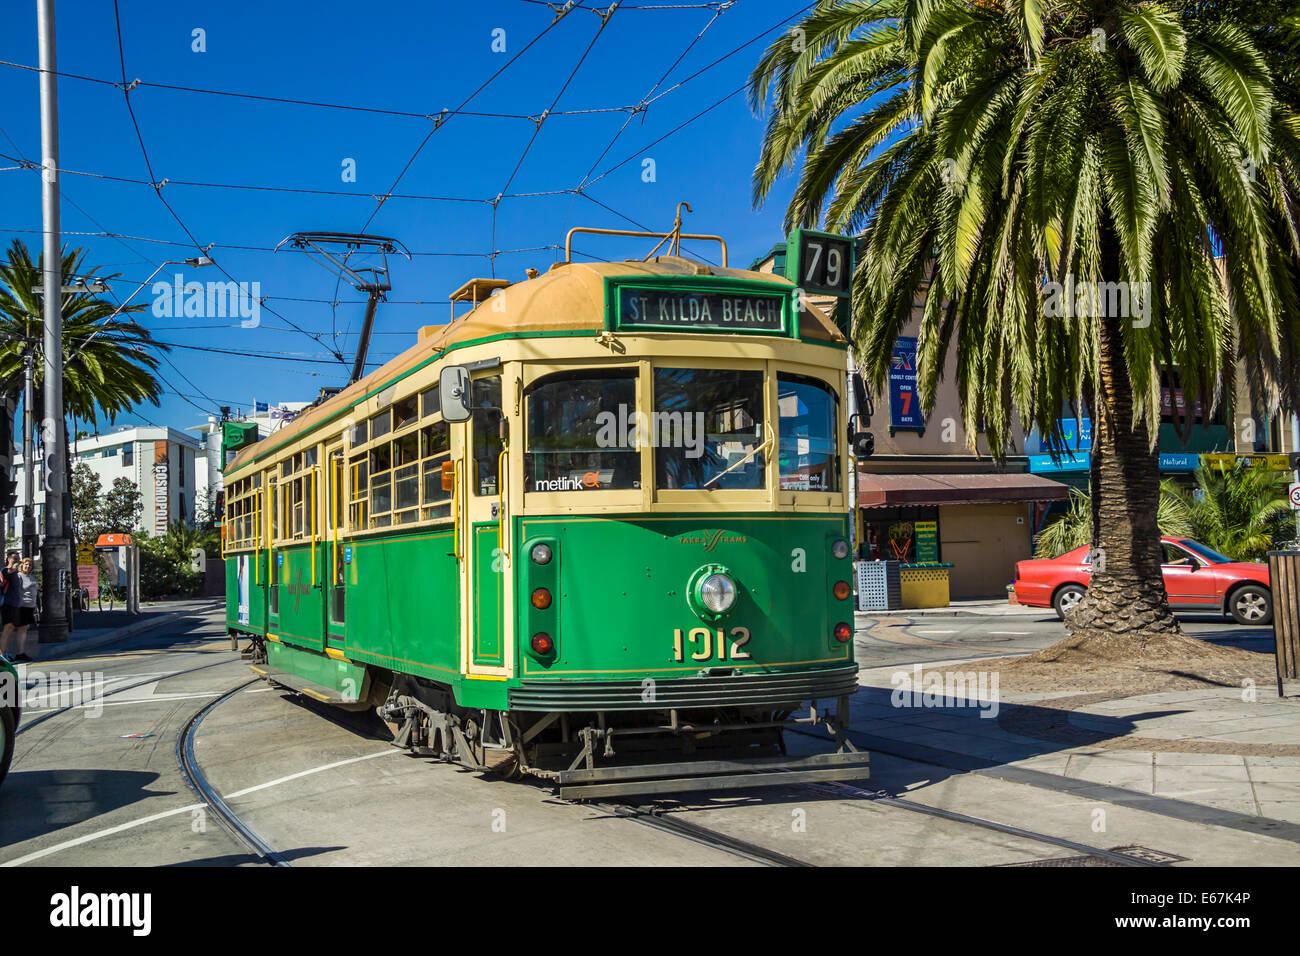 Tramway patrimoine vert et jaune, une icône de Melbourne, des palmiers rue bordée d'arbres à St Kilda, Melbourne, Australie Banque D'Images